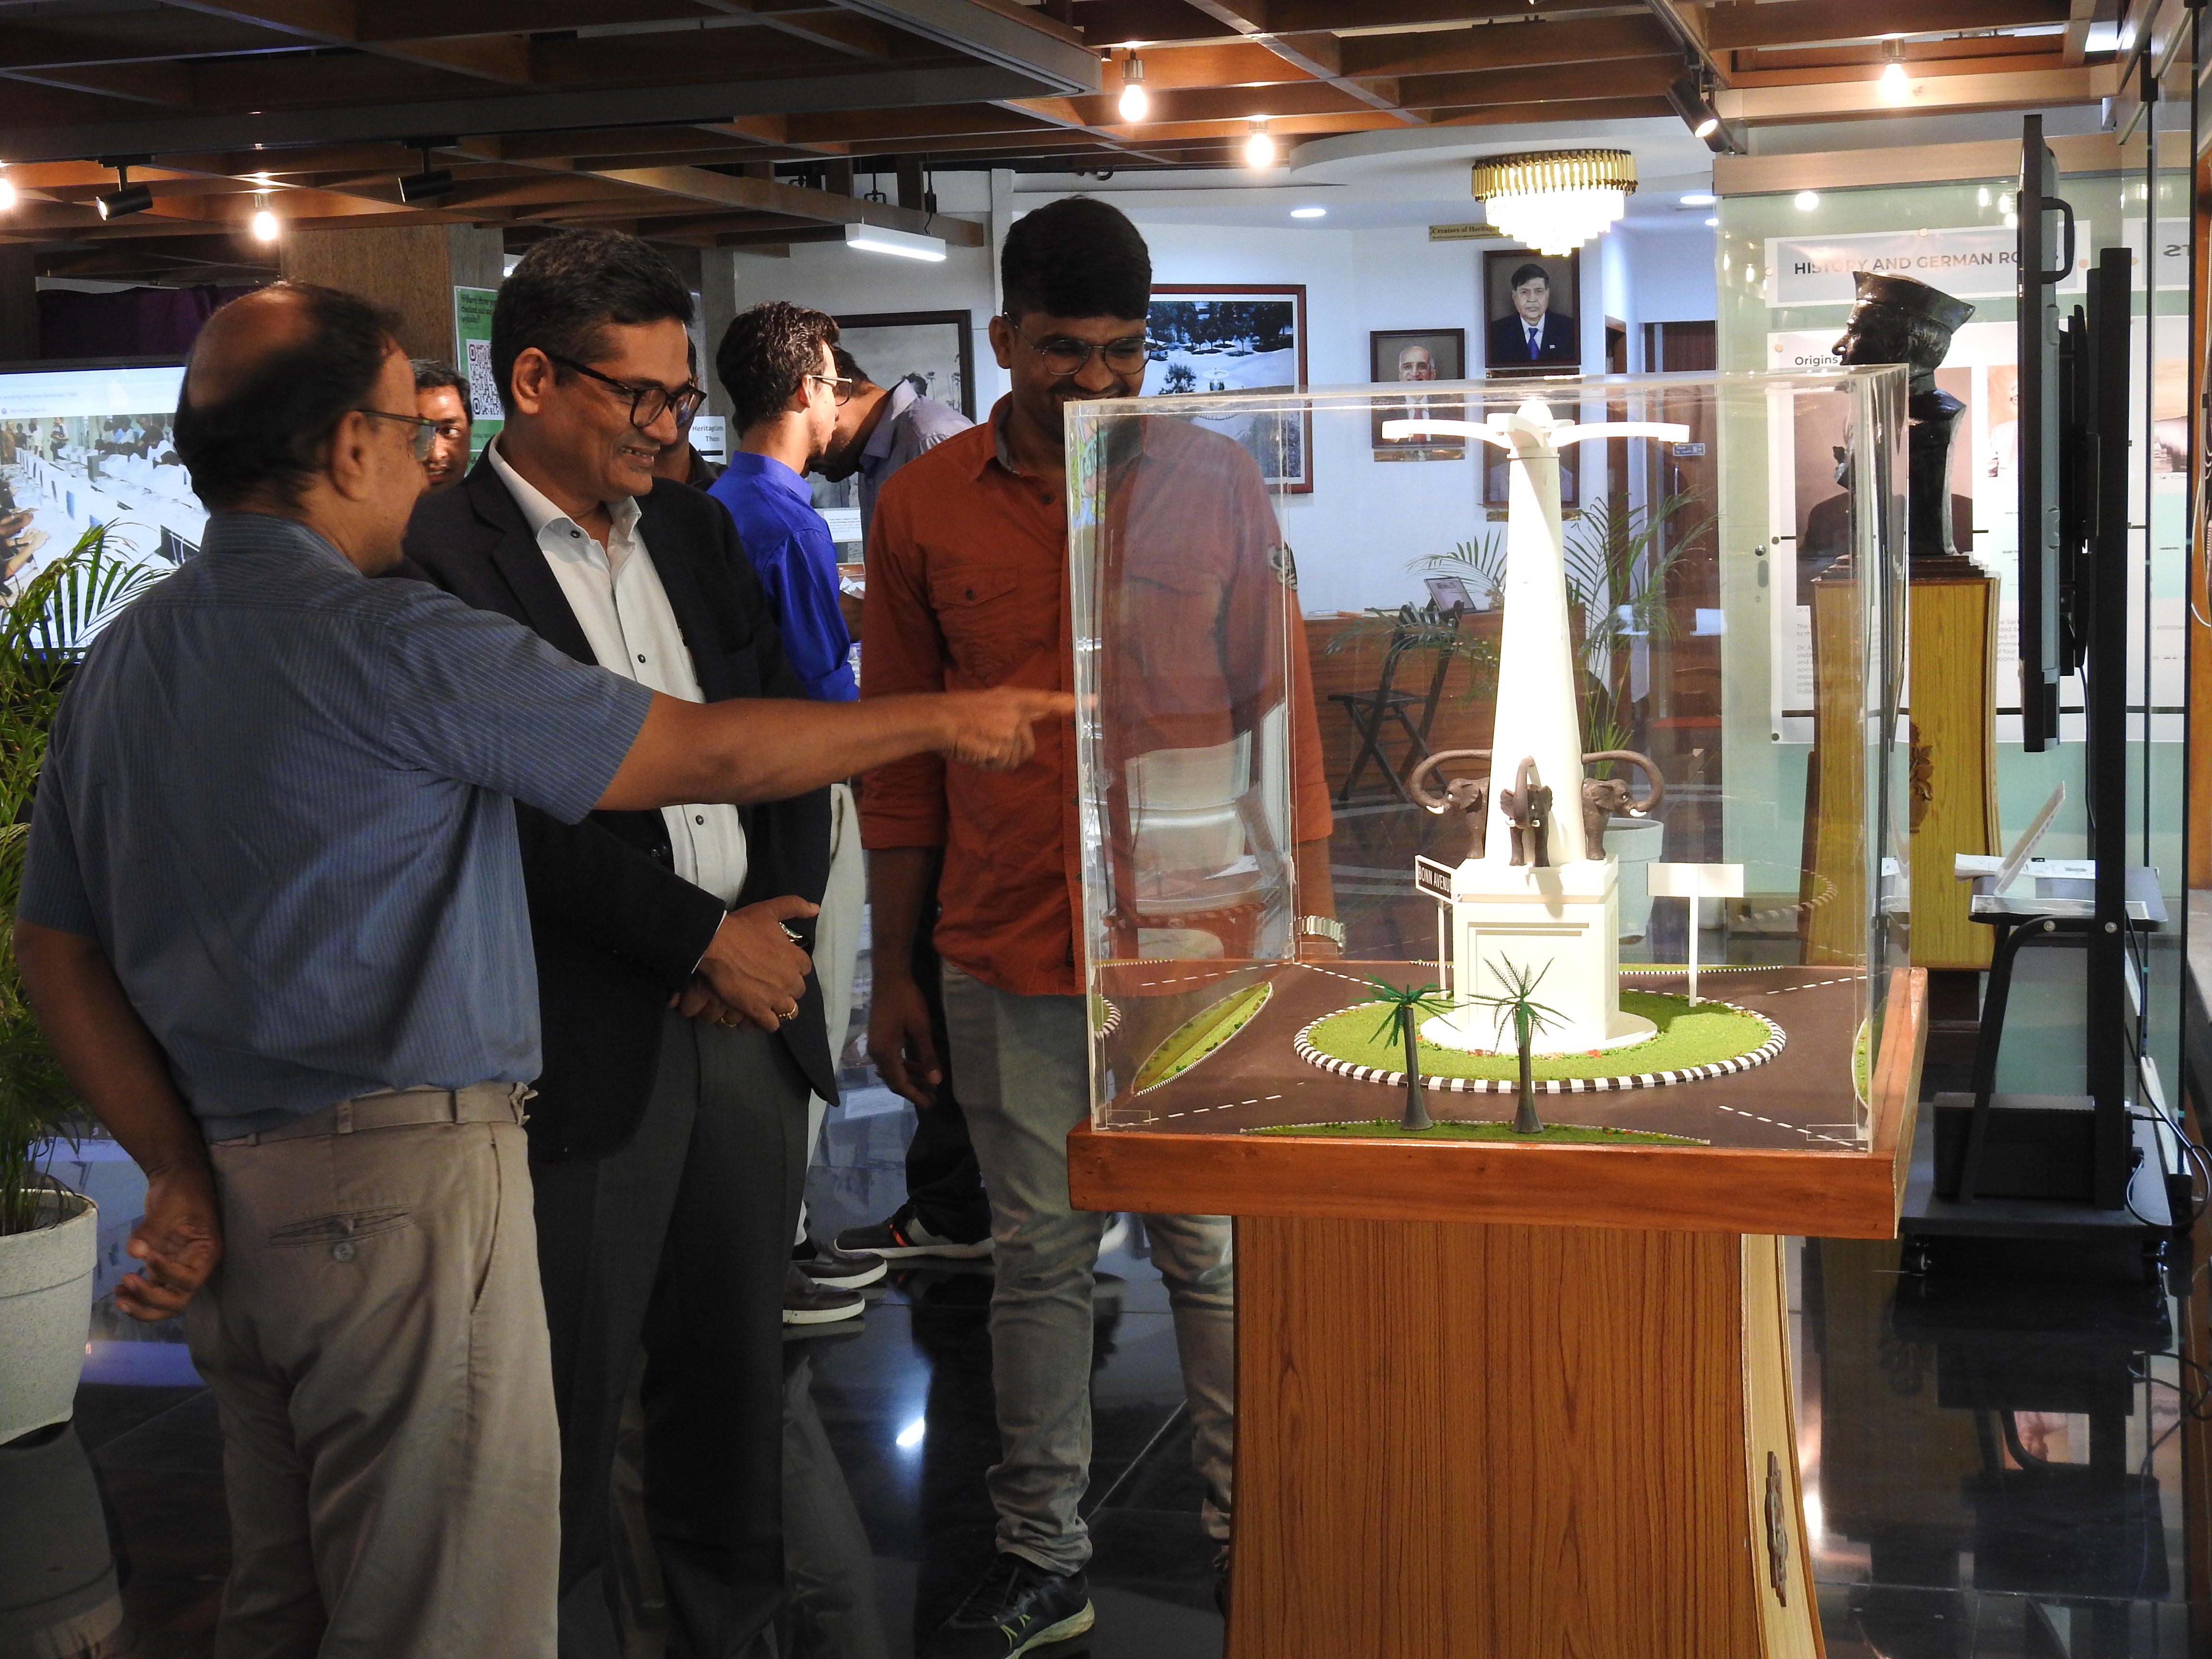 Mr. Krishnakumar Ramanathan takes a look at the model of the Gajendra Circle at the Heritage Centre